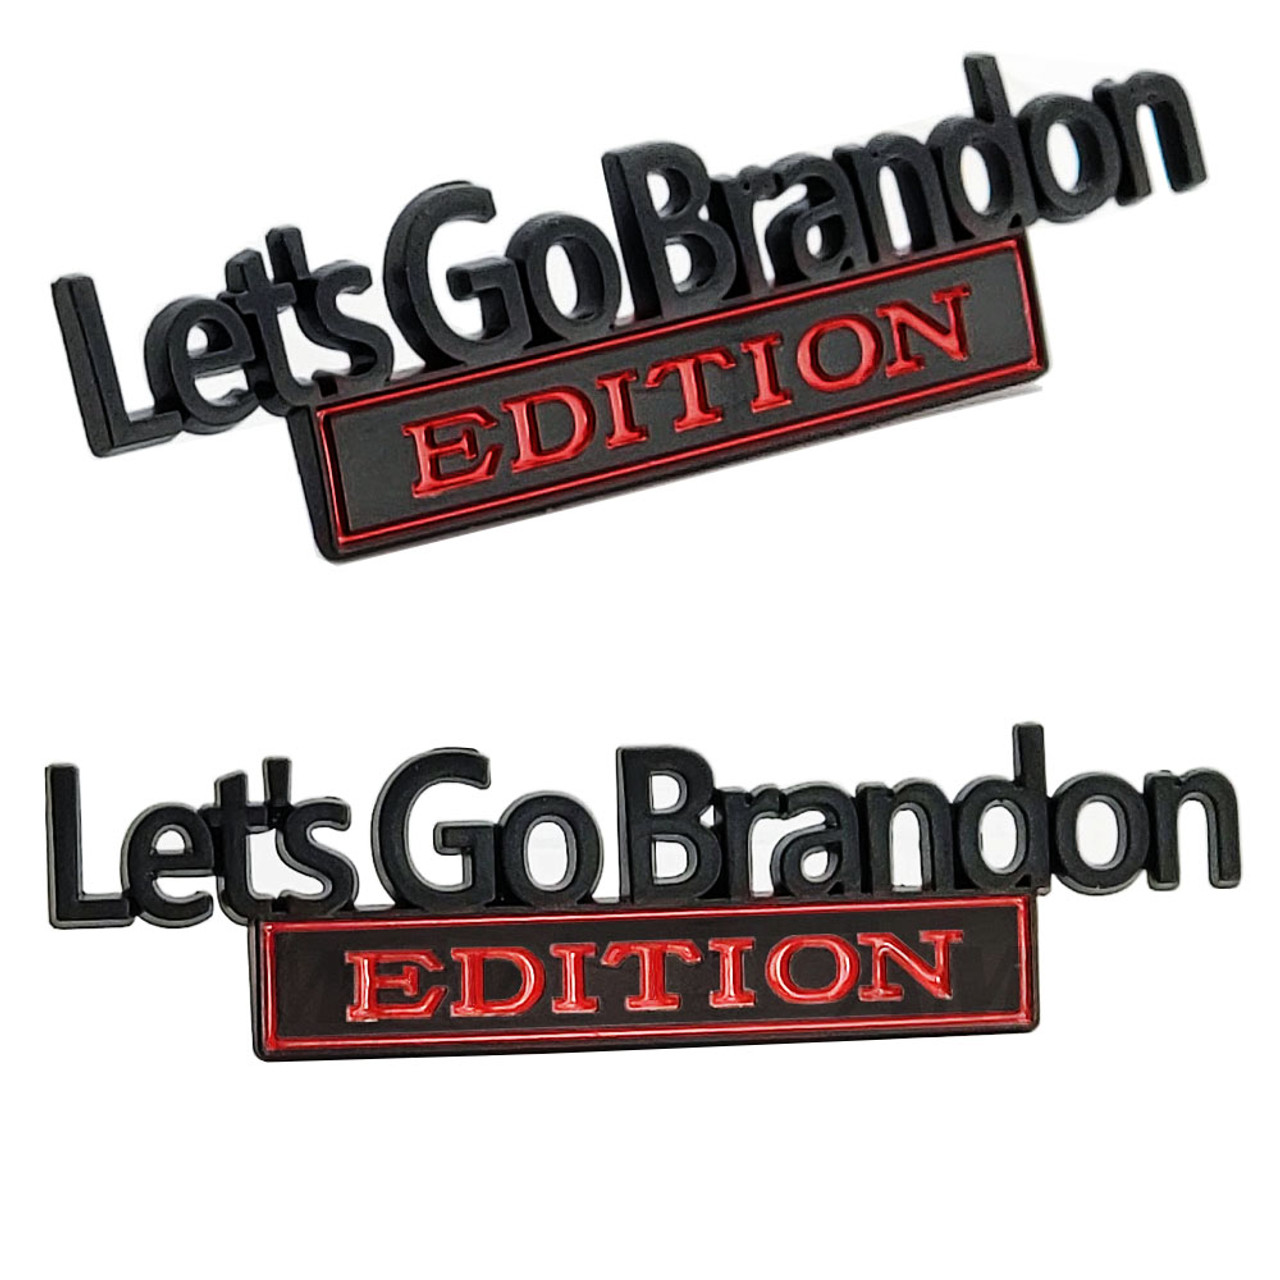 Lets Go Brandon Edition Car Decals 3d Letters Emblem Metal Car Sticker